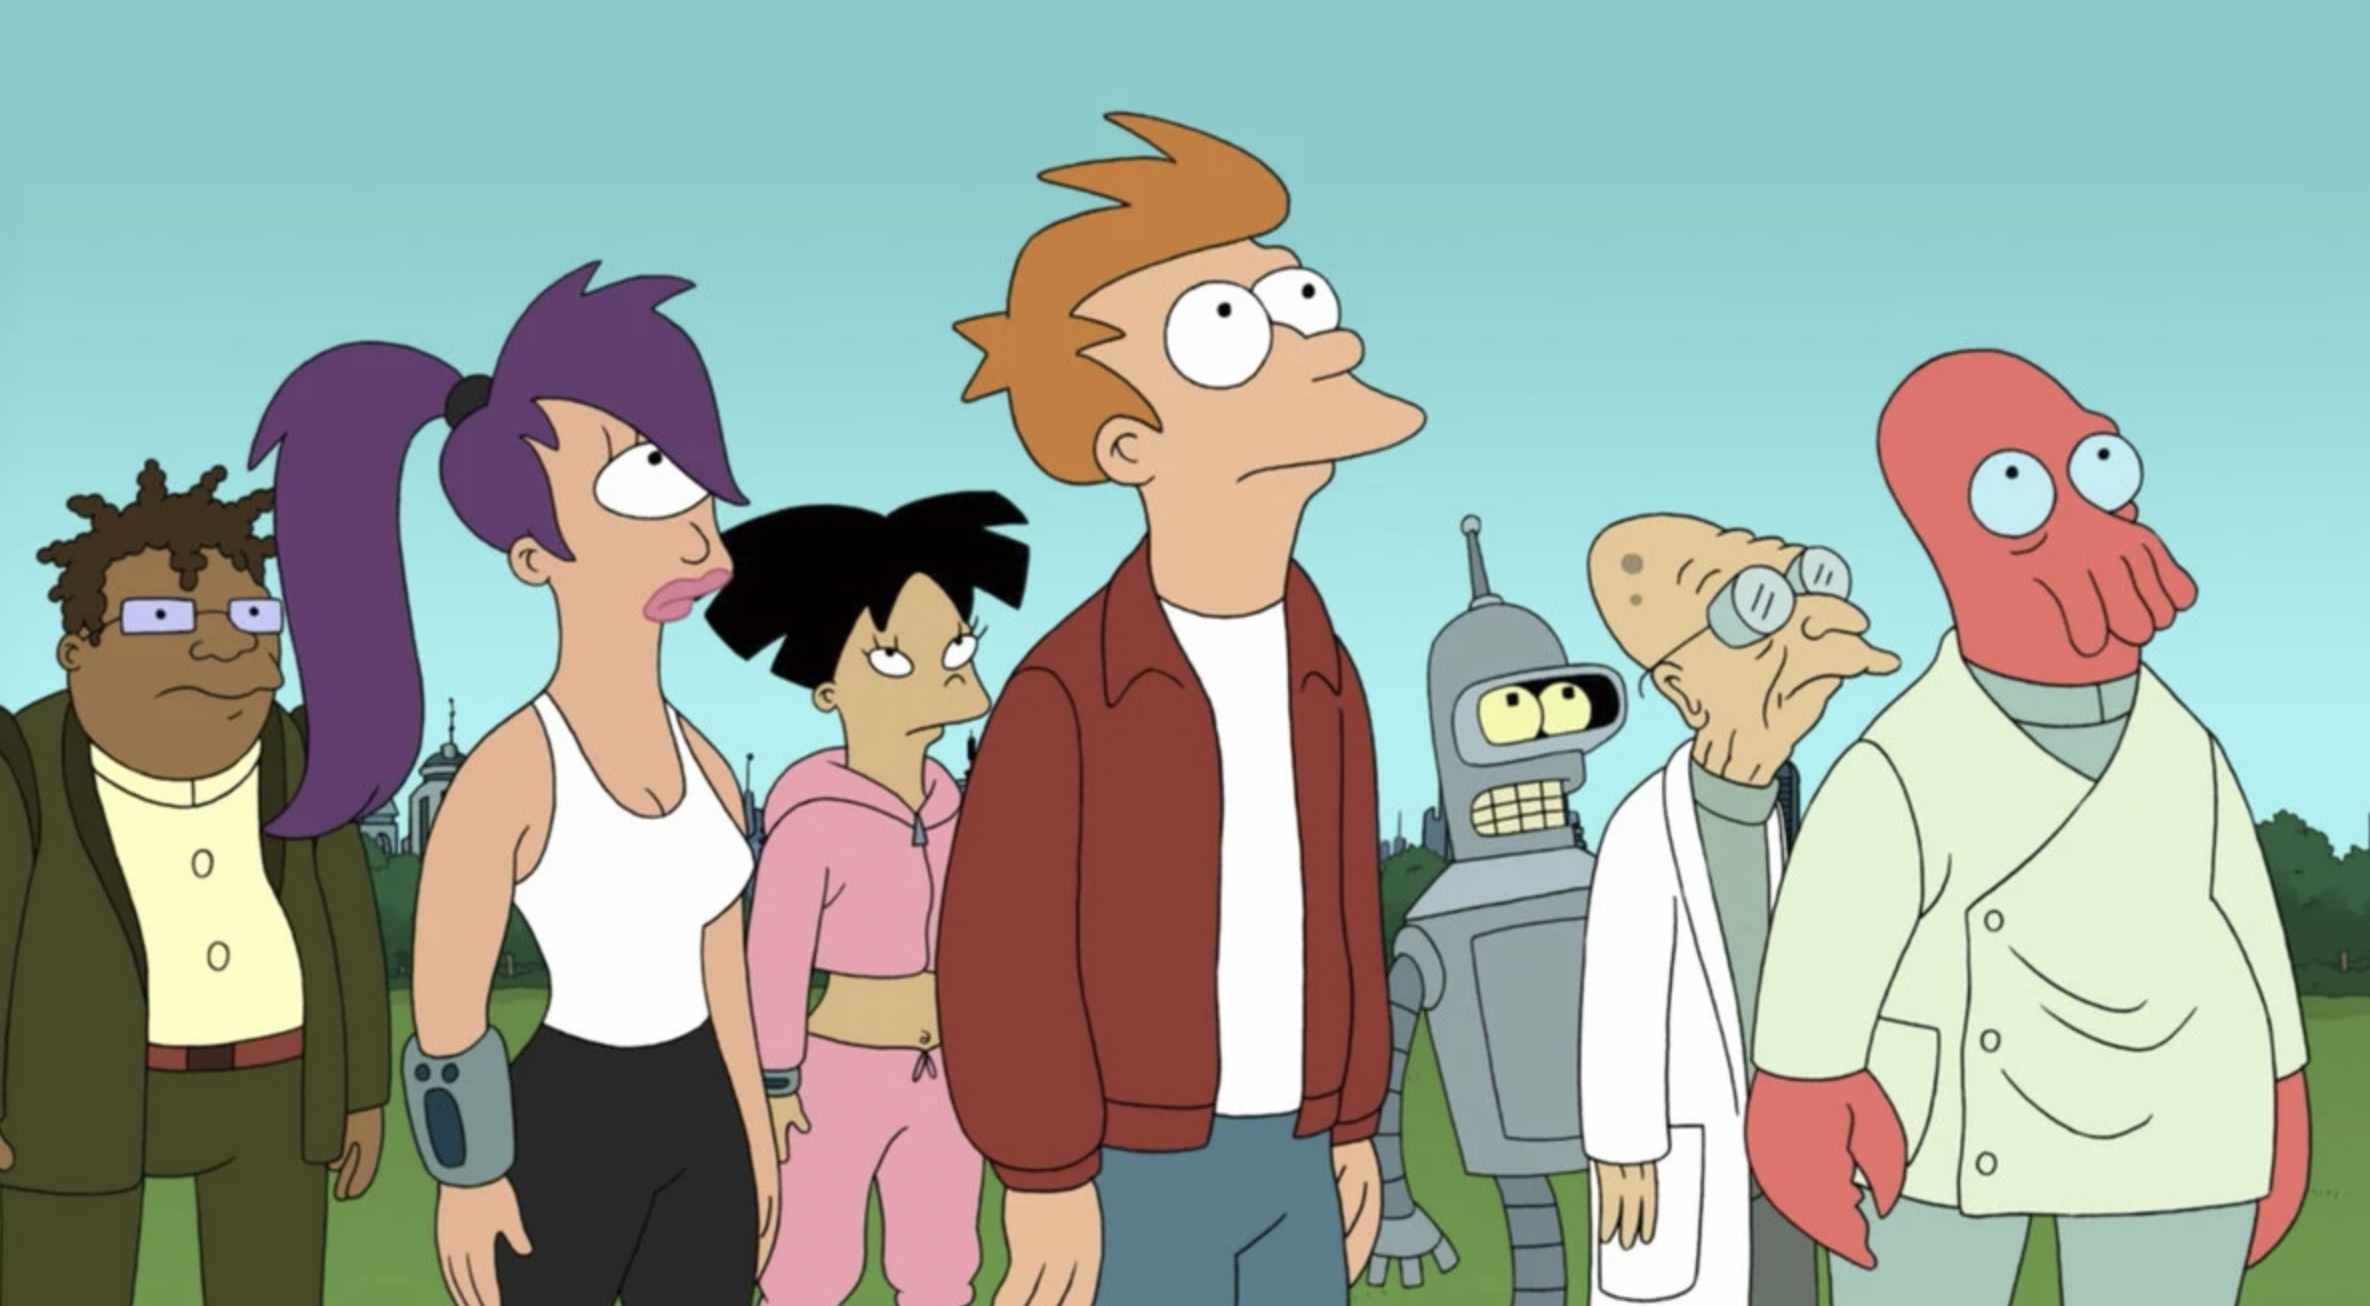 Hulu’s New ‘Futurama’ Revival Gets Premiere Date, Trailer